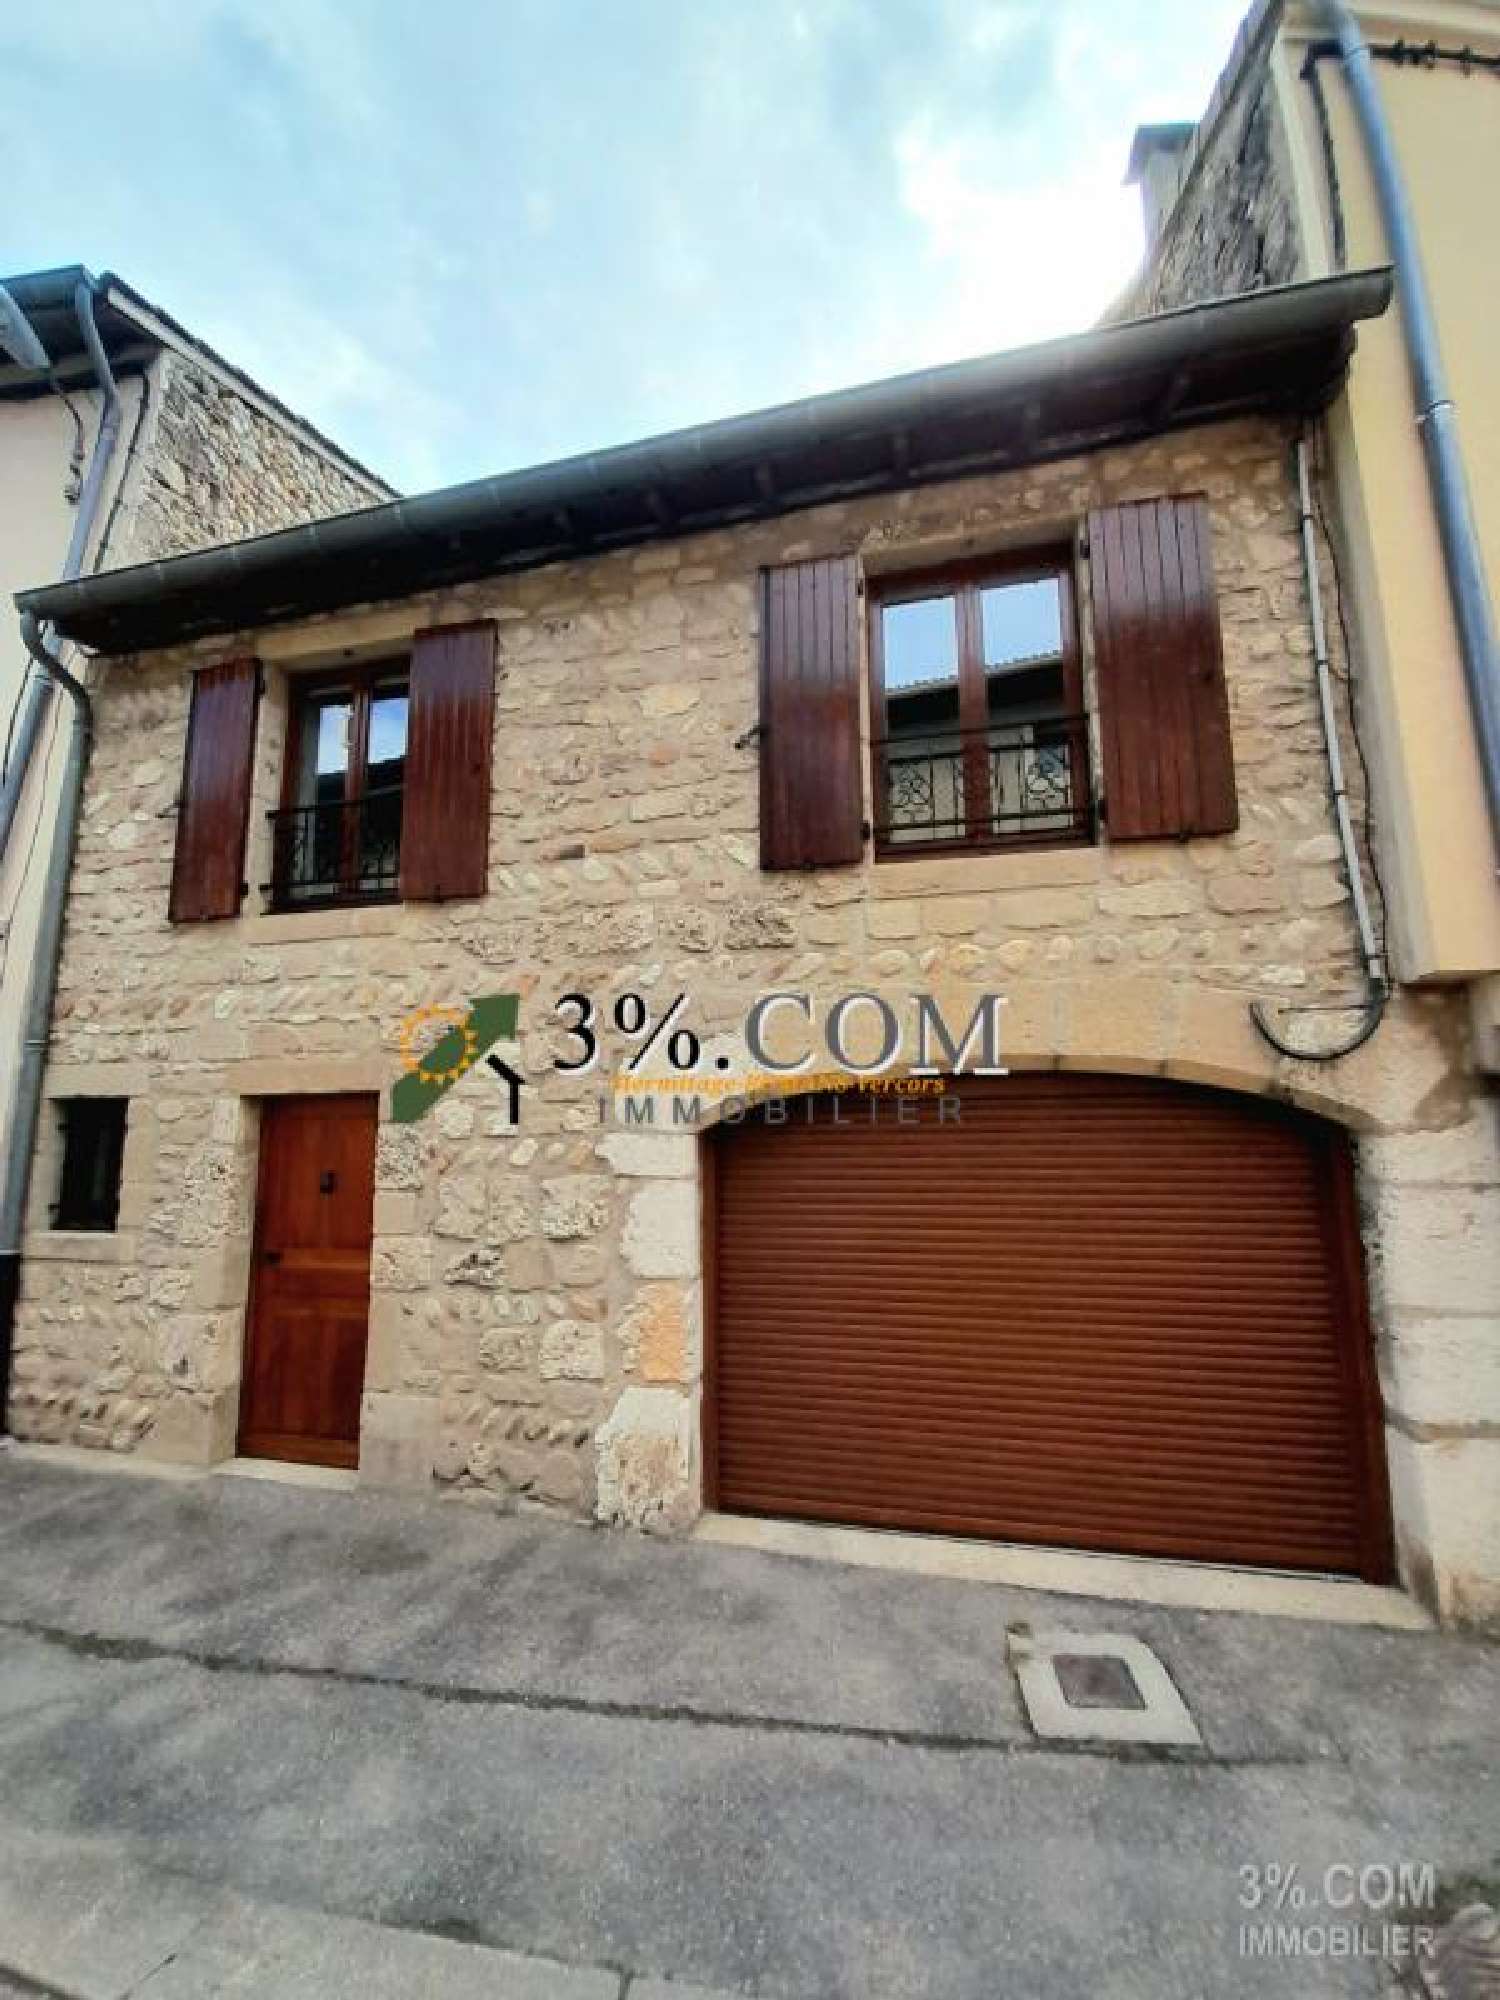  à vendre maison de village Valence Drôme 3